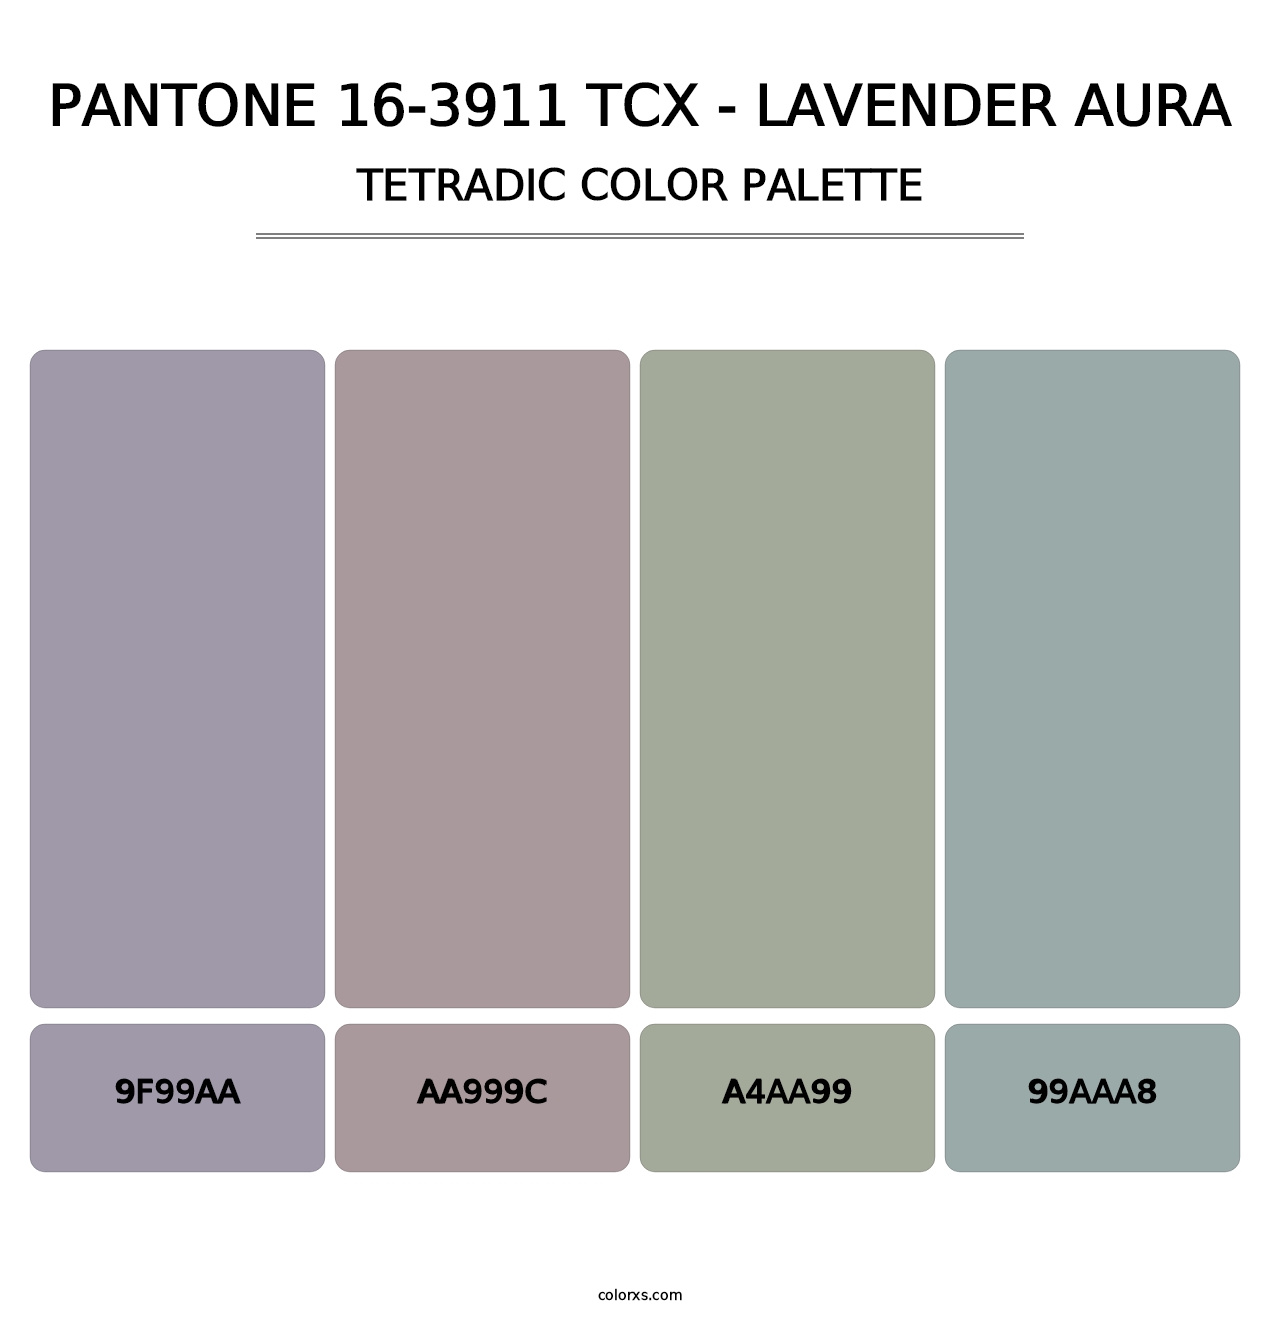 PANTONE 16-3911 TCX - Lavender Aura - Tetradic Color Palette